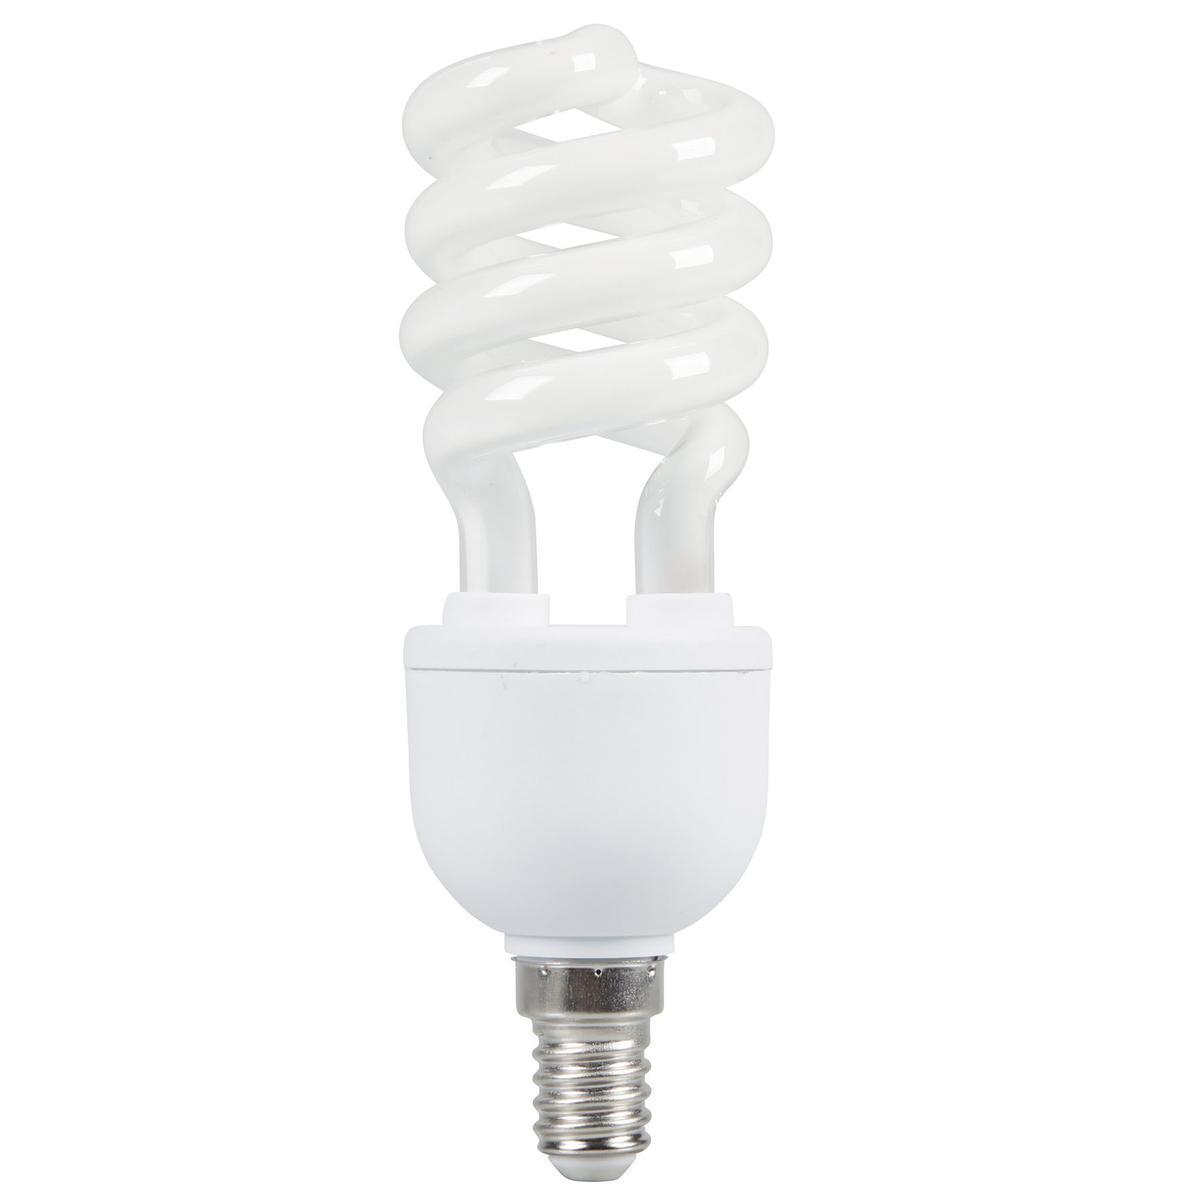 Ampoule à économie d'énergie torsadée E14 - 11.5 x 4.5 x 4.5 cm - Transparent